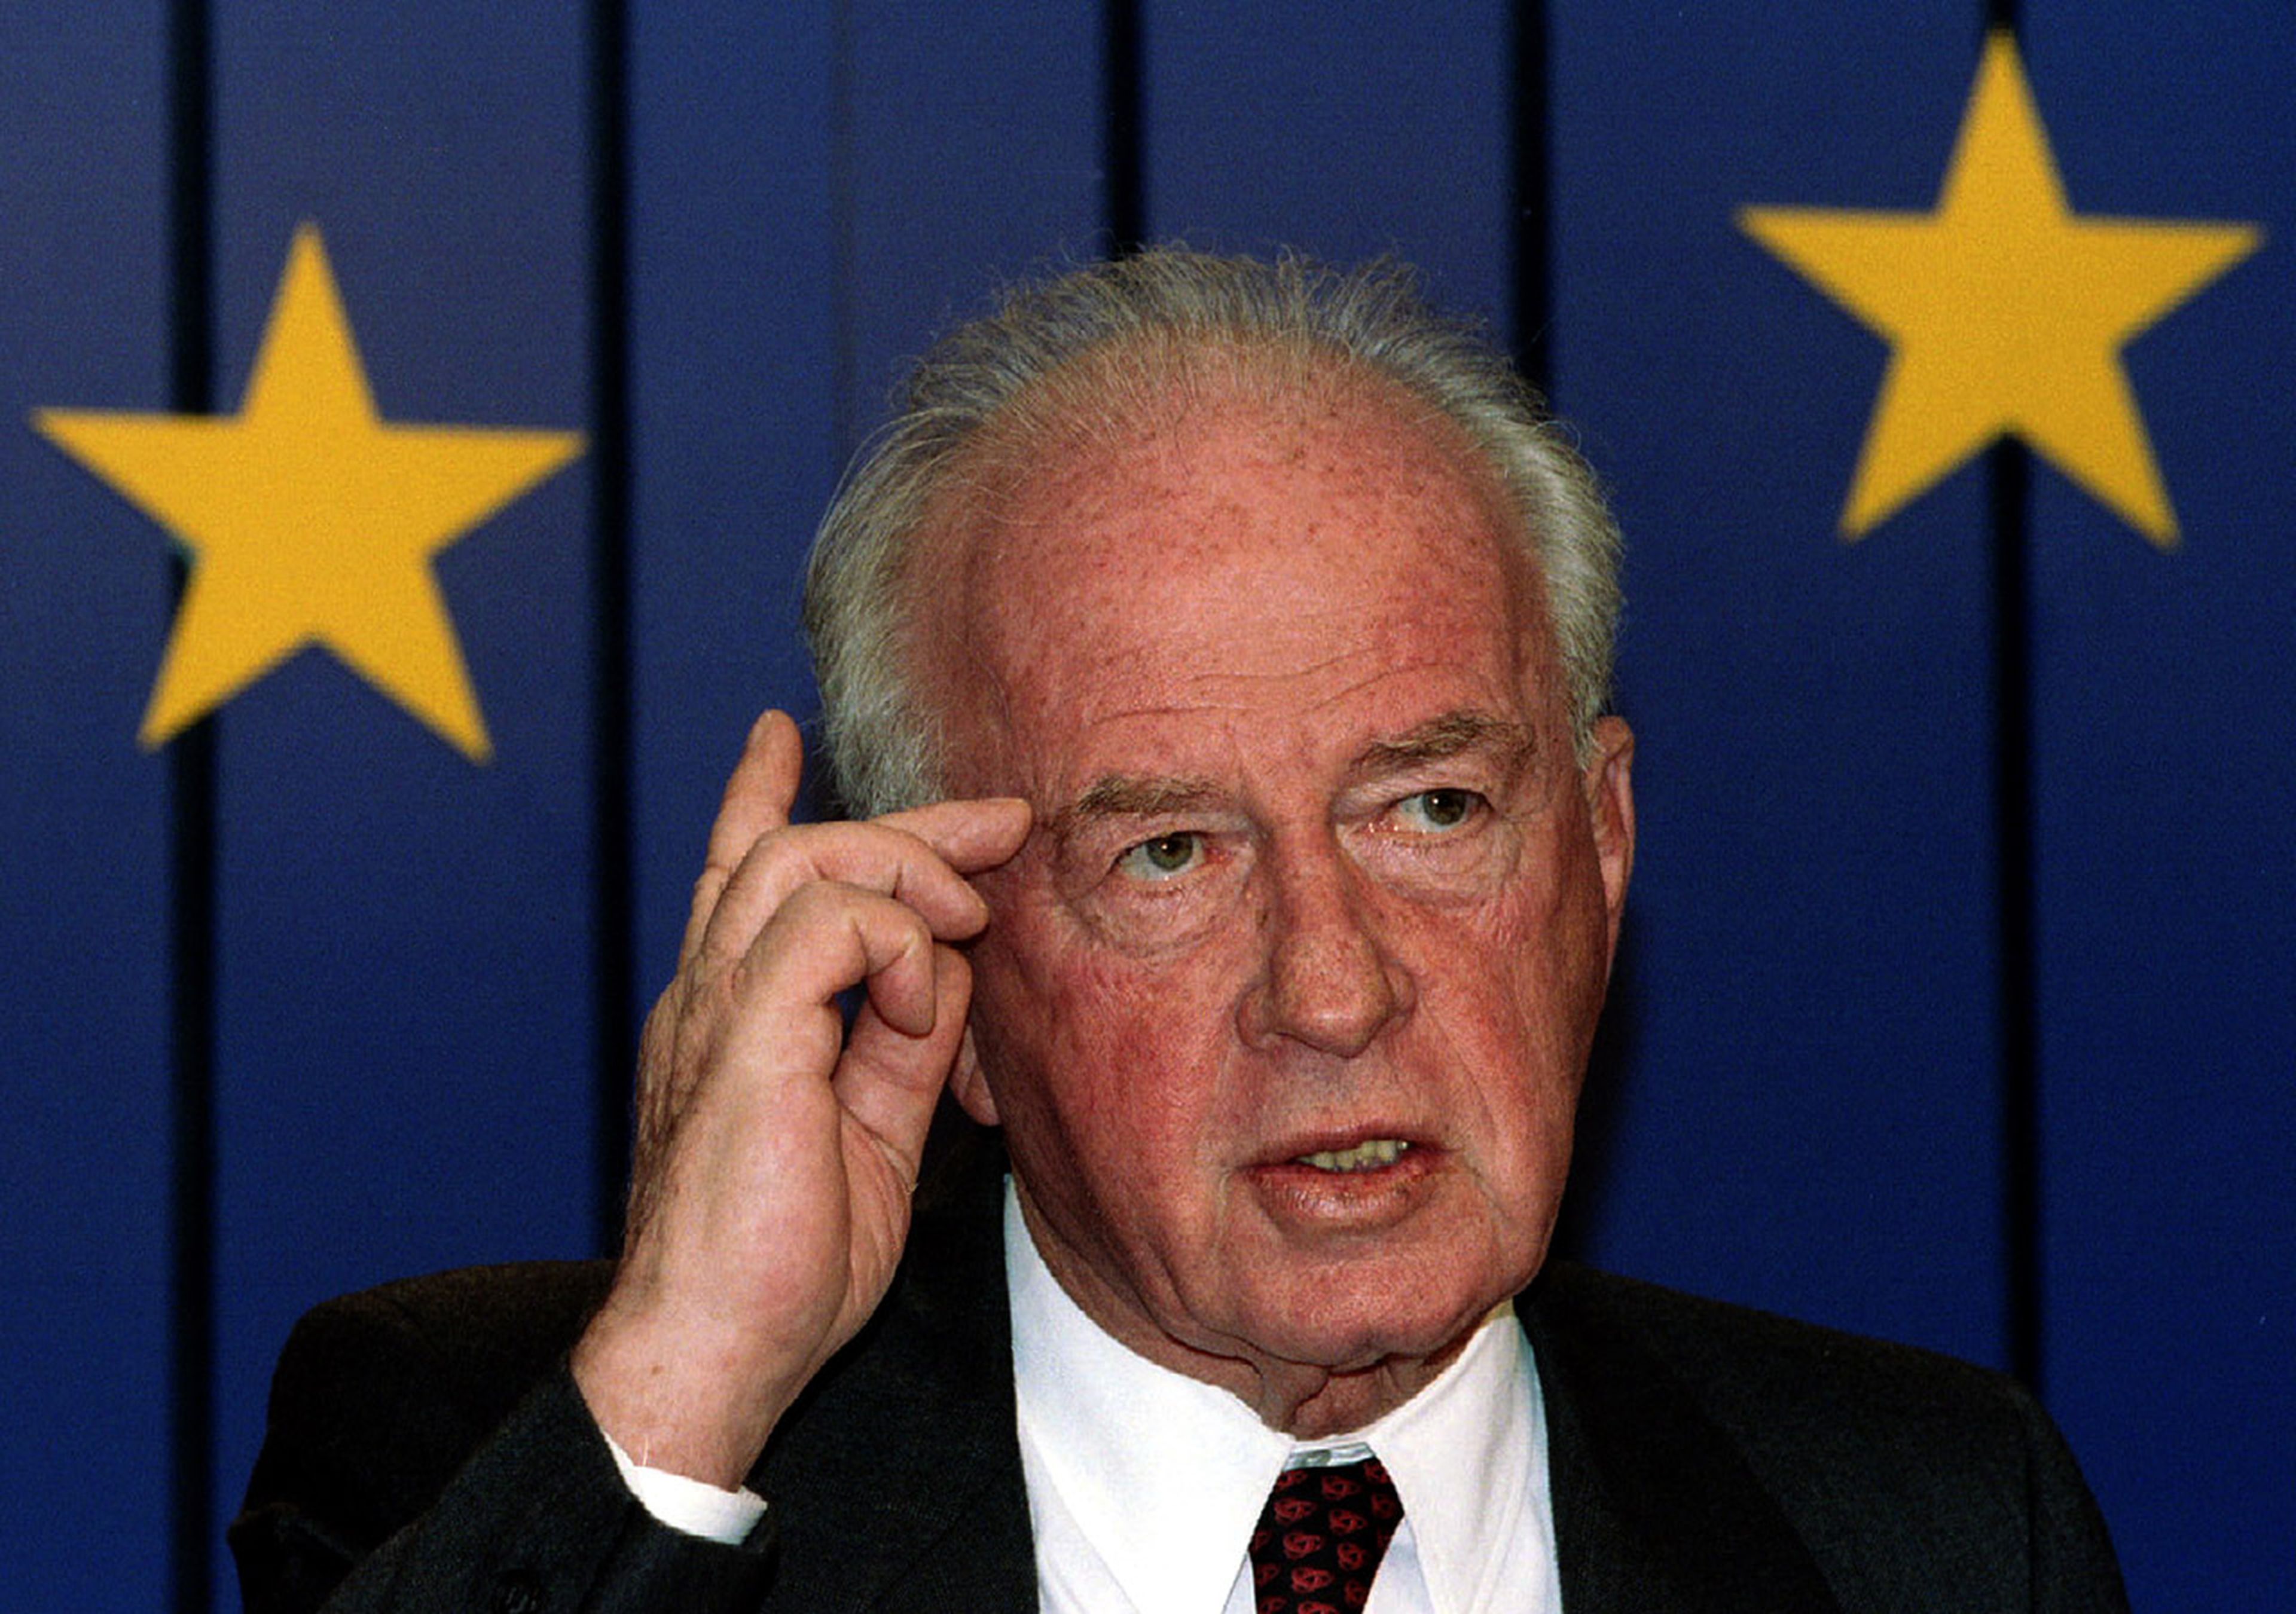 "El presidente Rabin estableció fronteras entre países y evitó una guerra, sólo con una visión a largo plazo se puede lograr algo así".